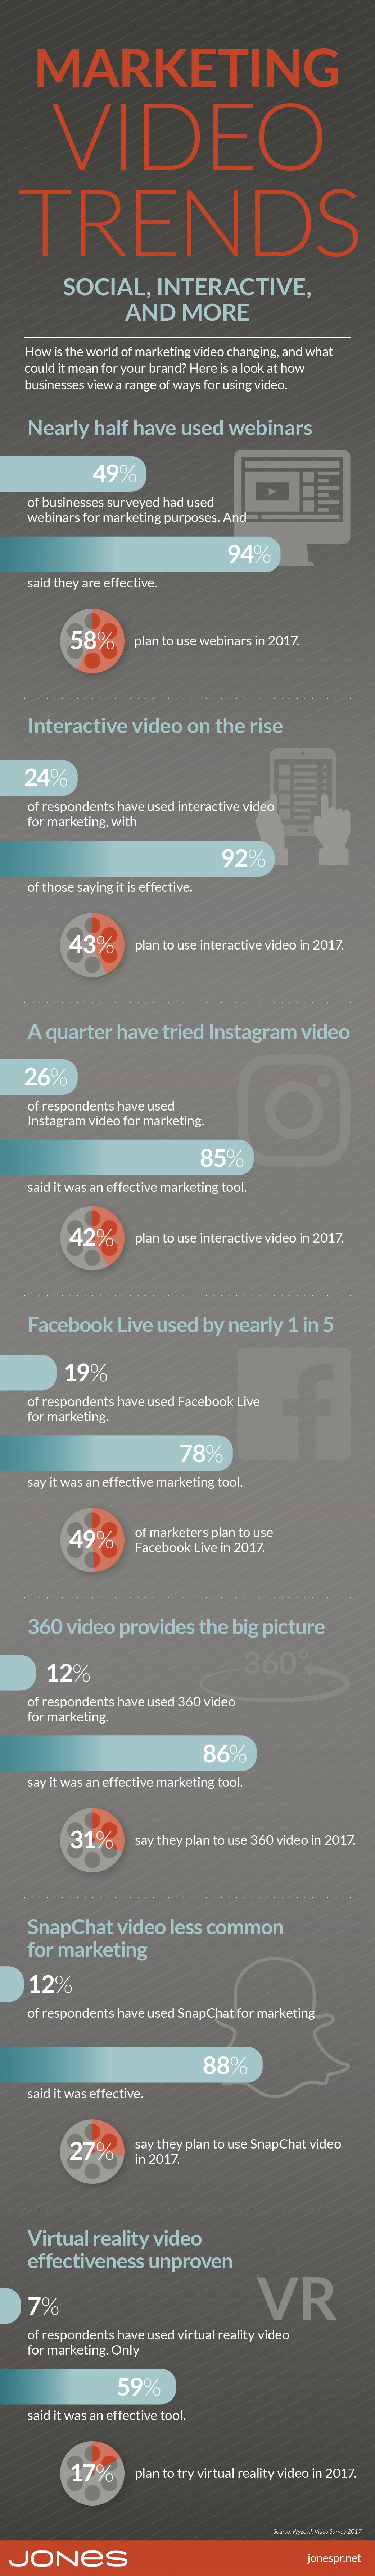 jones-infographic-marketing-video-trends-1